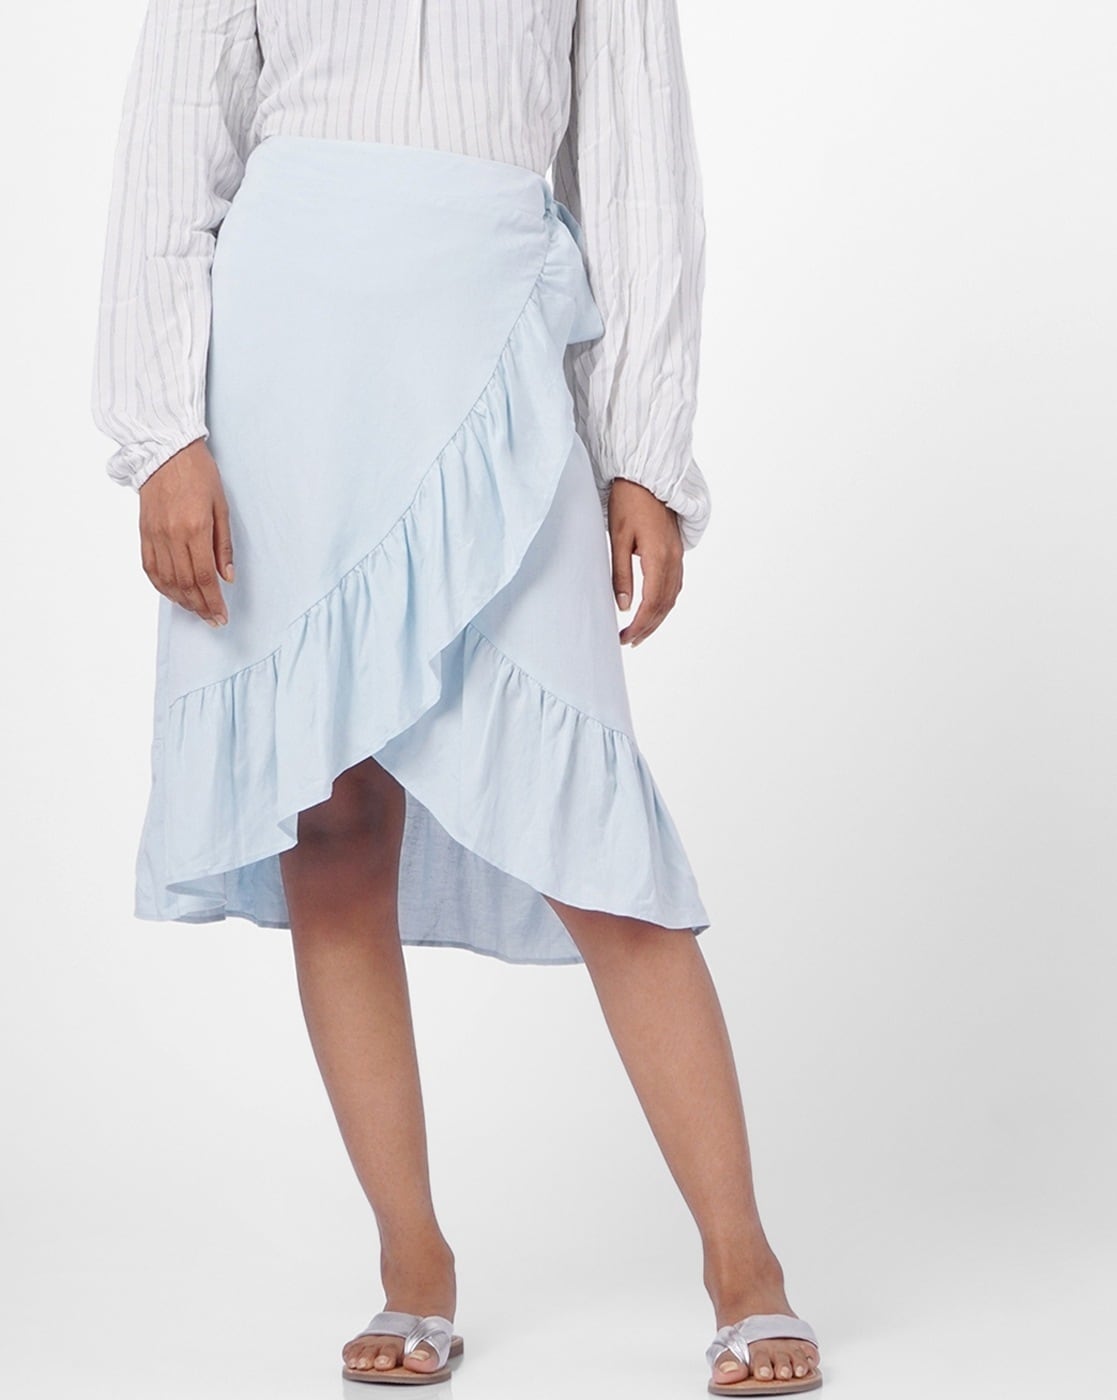 Frill Sleeve Top  Asymmetrical Skirt Set SkuBLMG20293  BITTERLIME